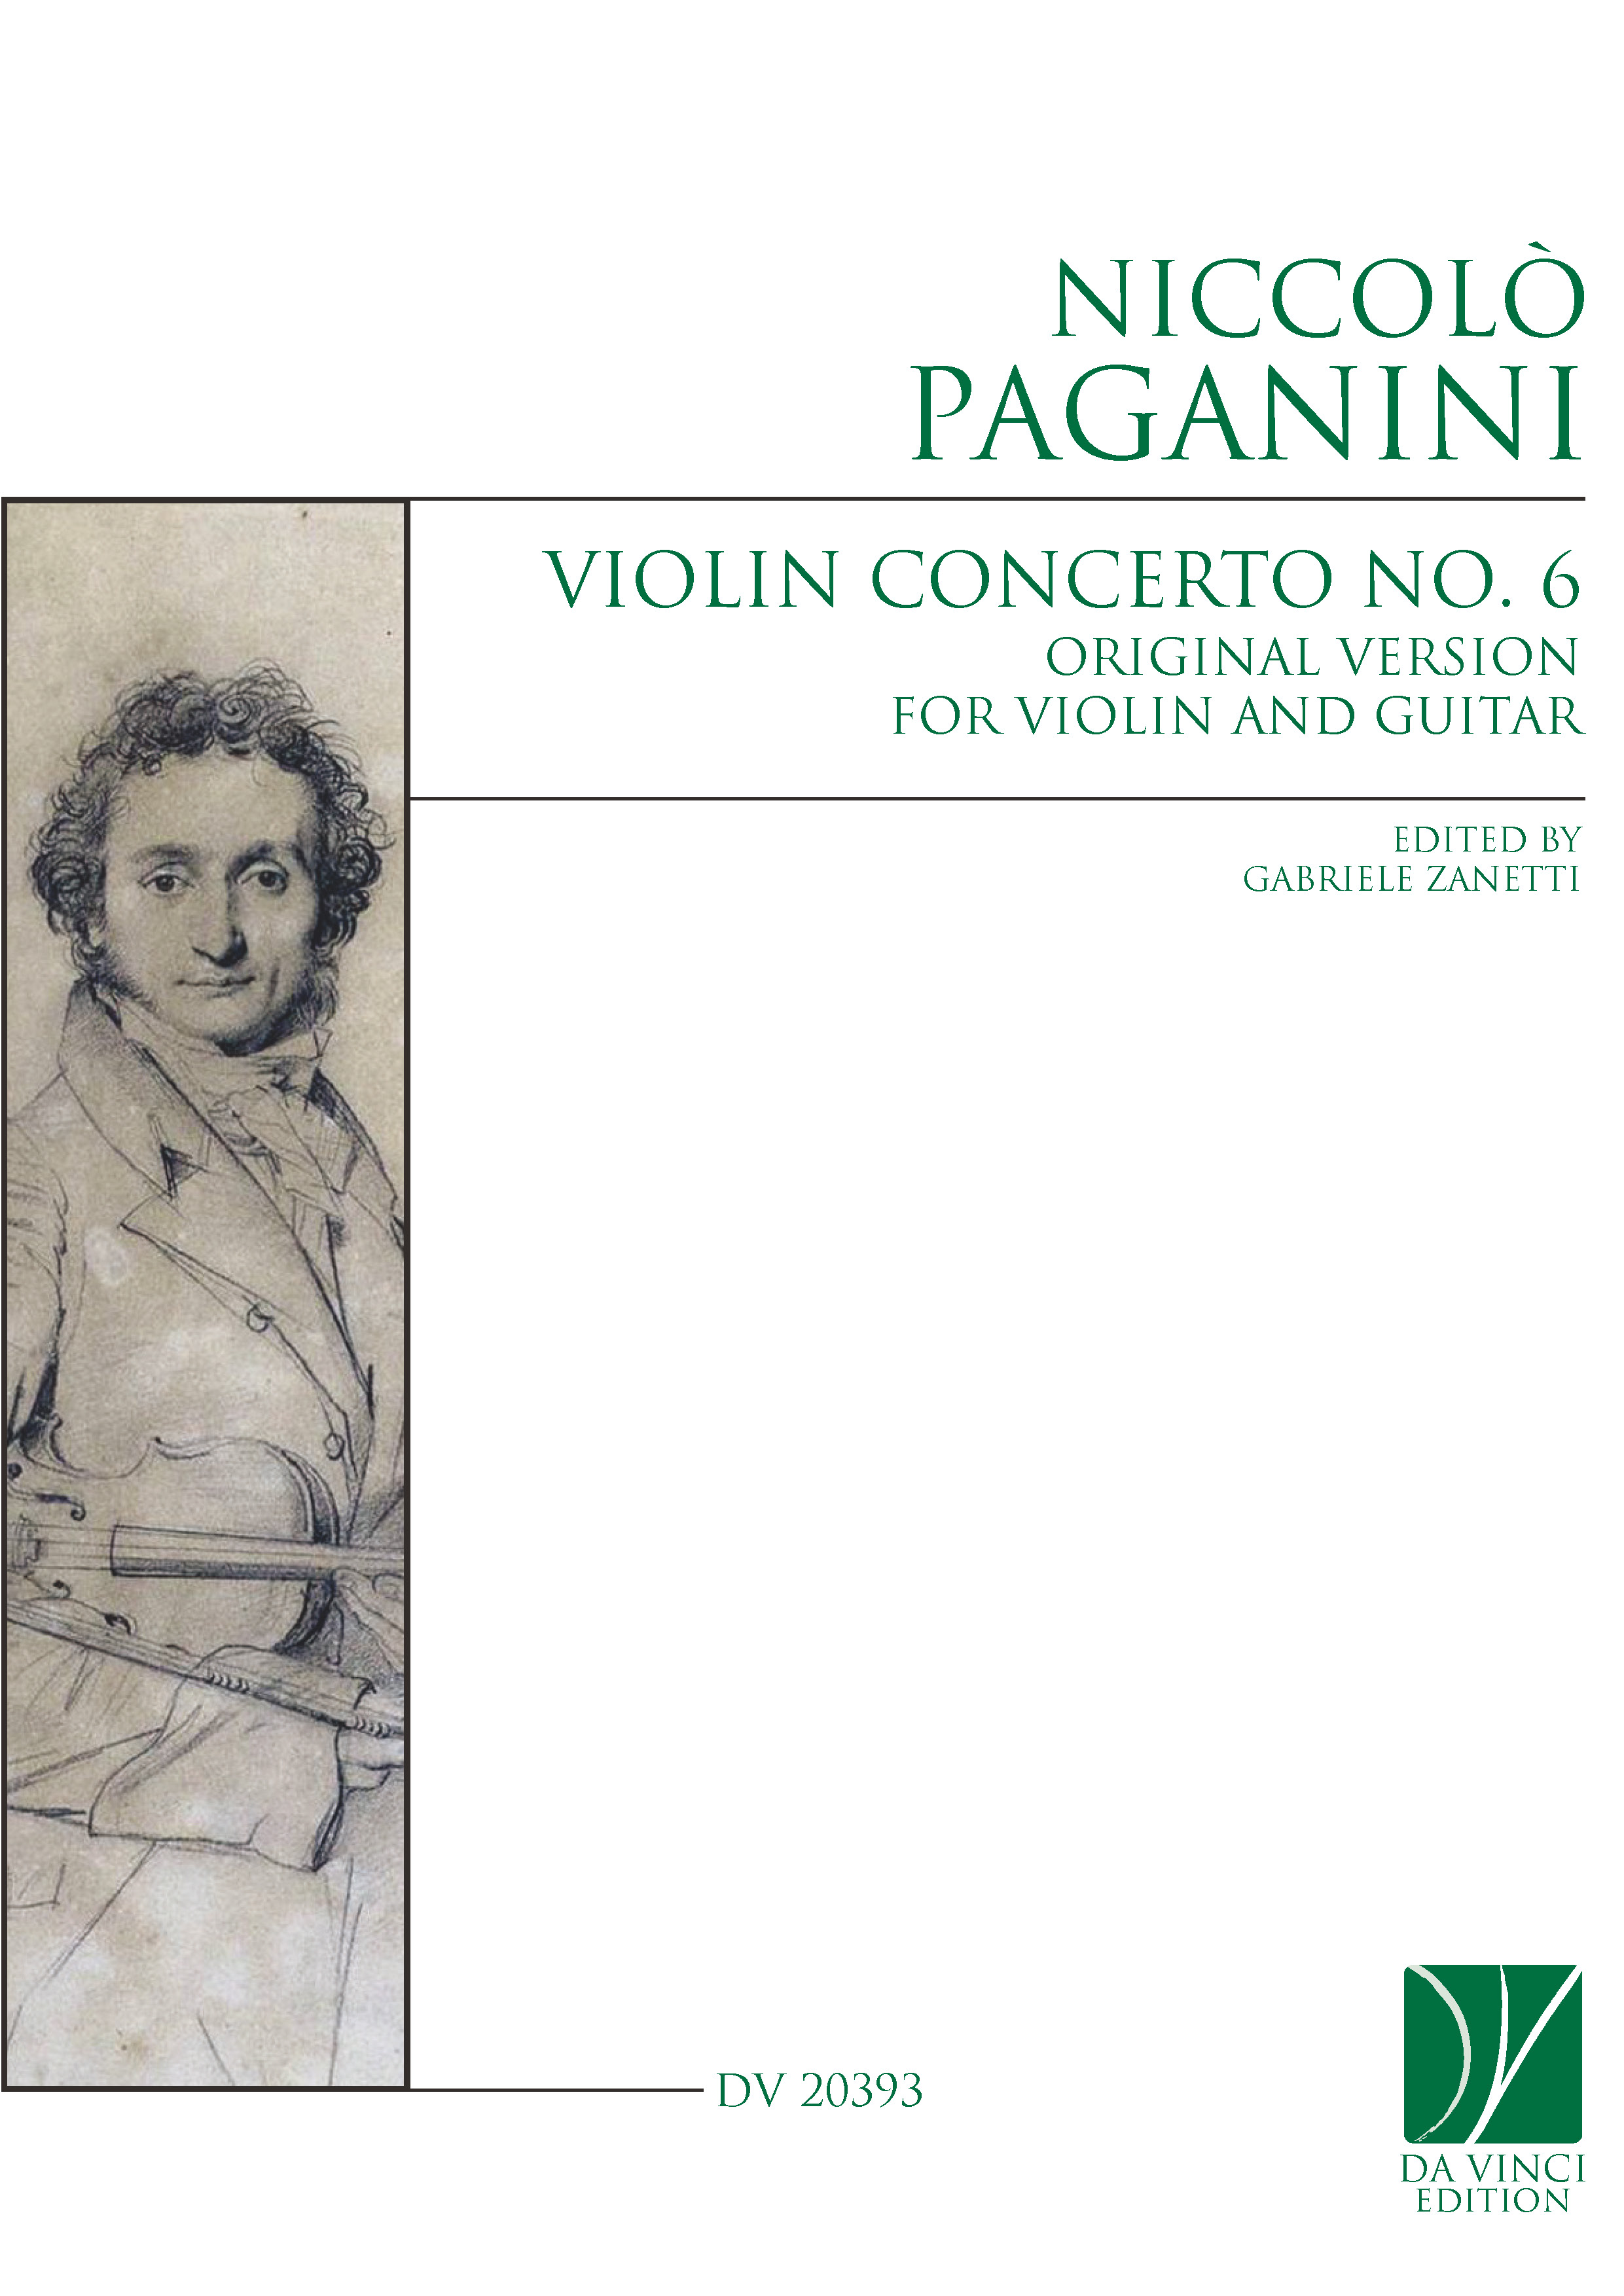 DV 20393 - Cover (Paganini - Violin Concerto 6)